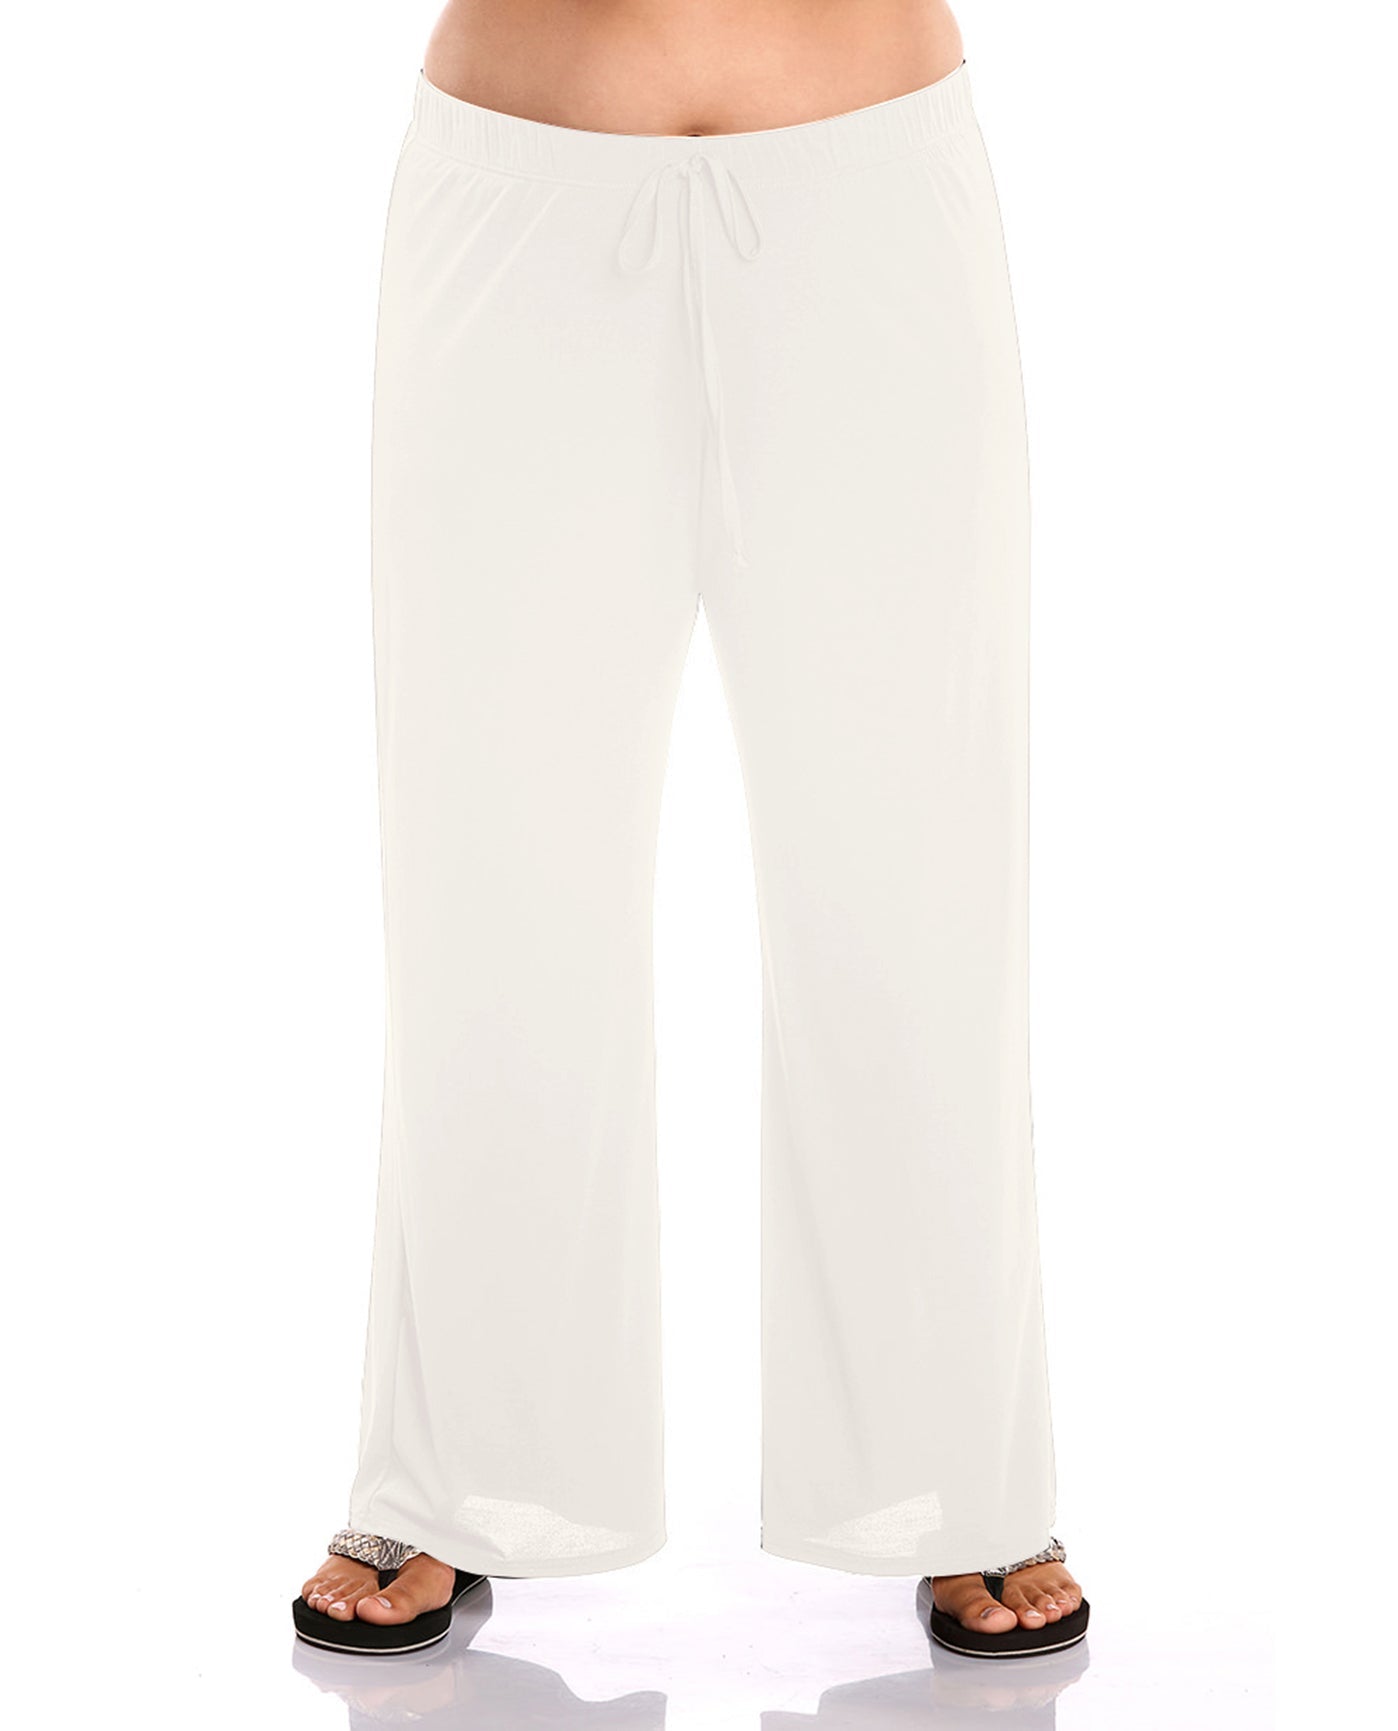 Women's White Cotton Beach Pants & Wide Leg Lounge Pants